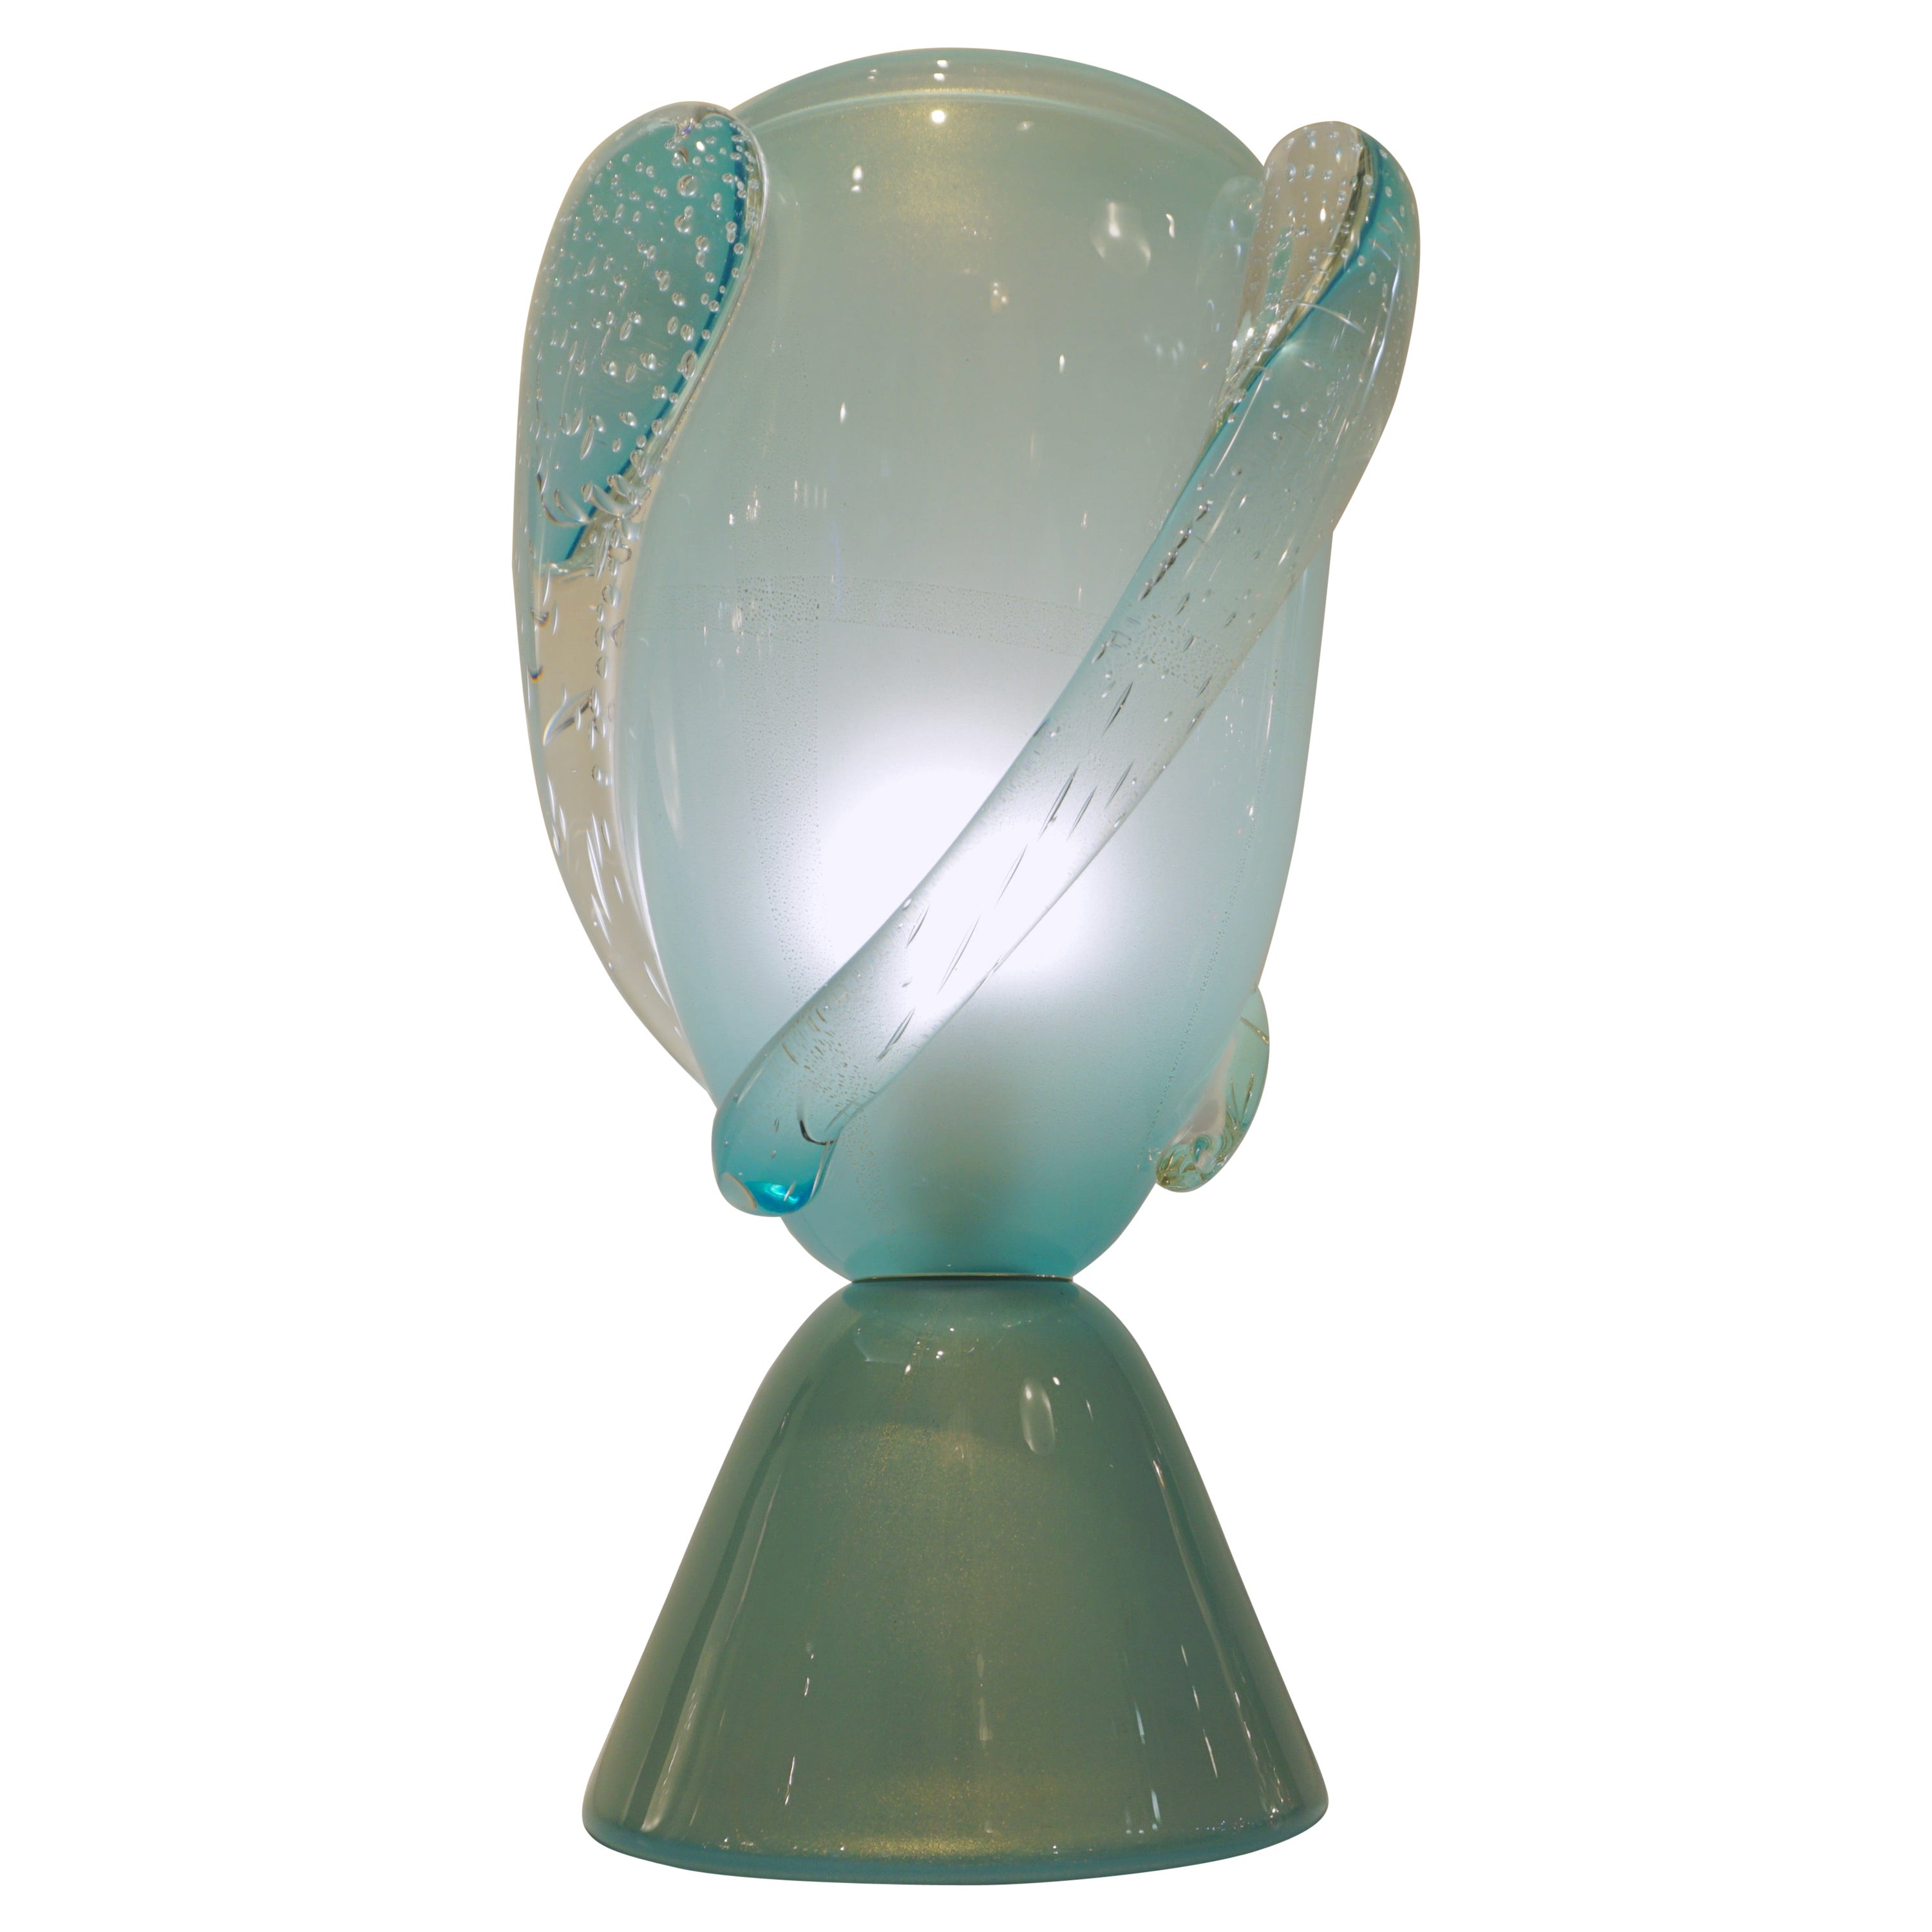 Lampe de table en verre de Murano de haute qualité, soufflé à la bouche, signée Barovier&Toso, dans une rare couleur baby aquamarine azur, travaillée avec de la poussière d'or 24Kt pour conférer de l'éclat au verre. Le bleu de mer passe